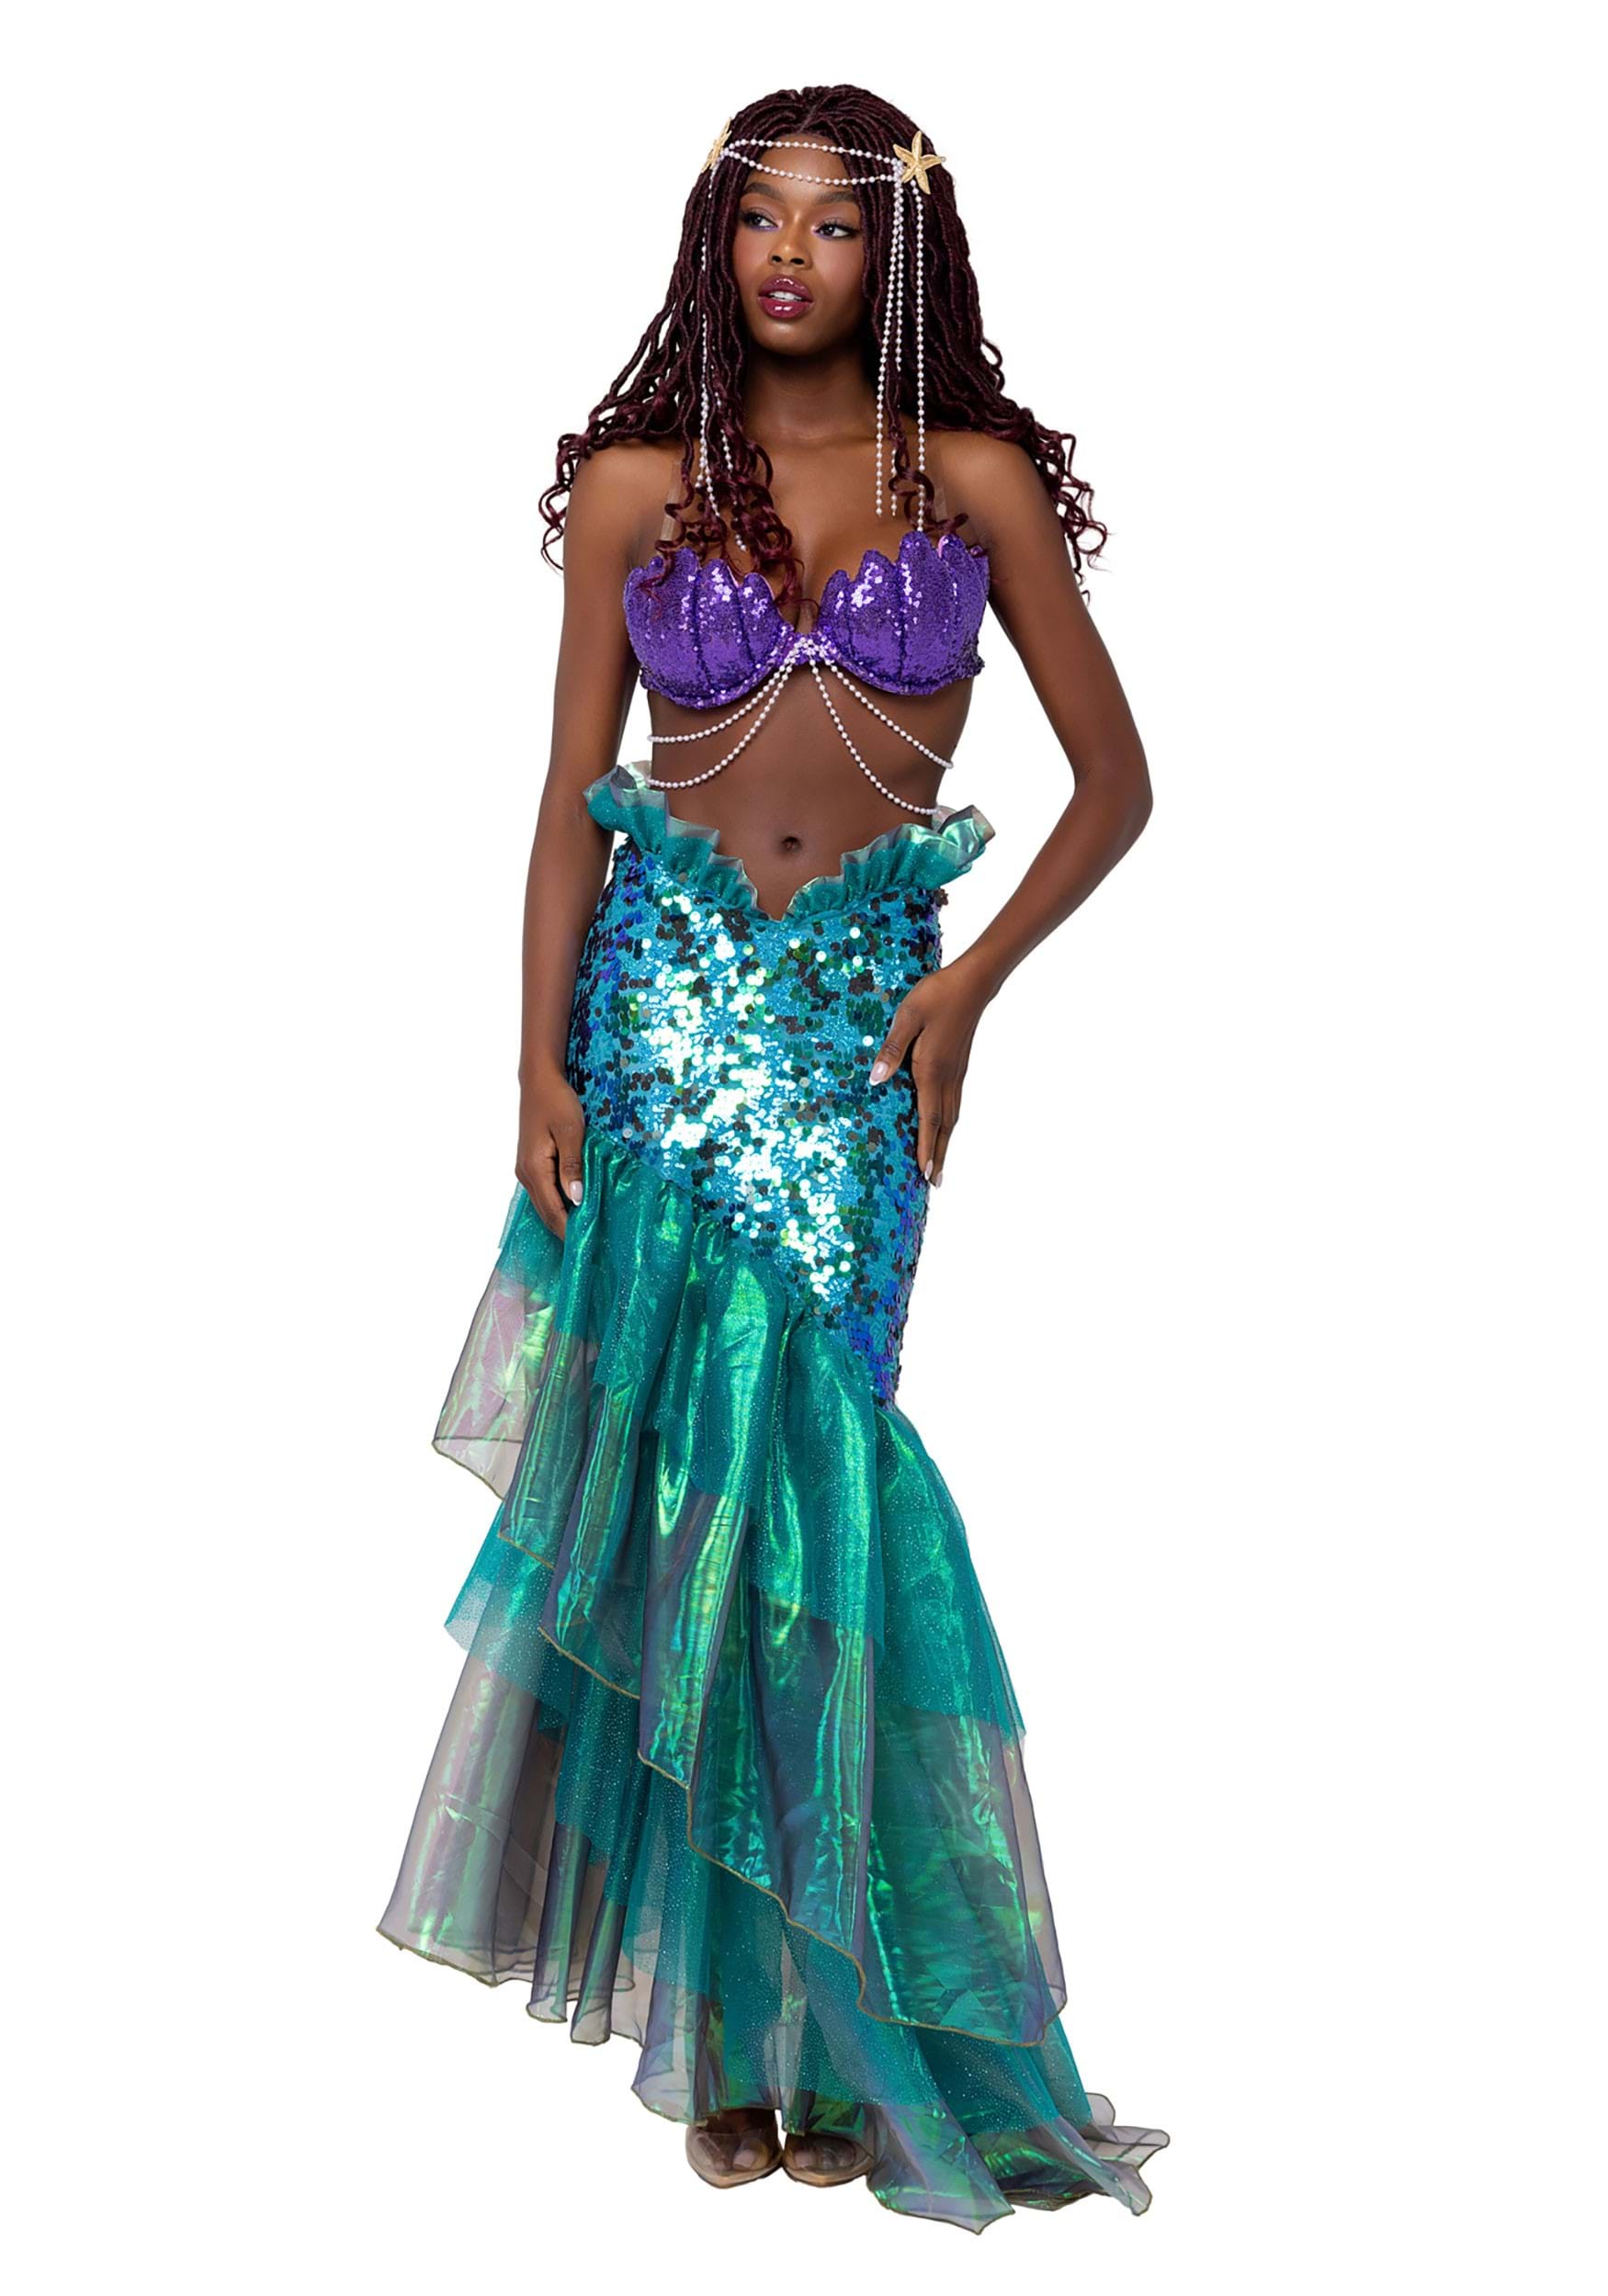 Mermaid Bra IN STOCK, Mermaid Costume Bra, Mermaid Costume Ready